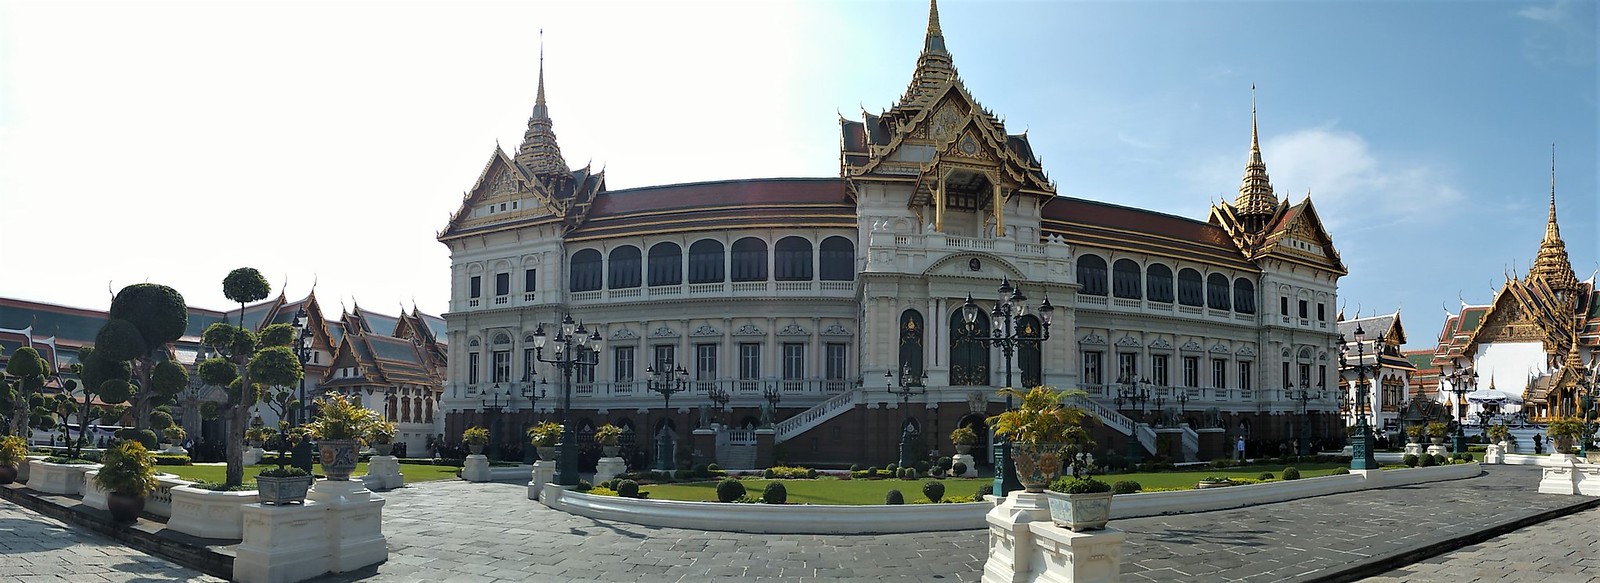 Bangkok esencial: Gran Palacio, Wat Pho y Wat Arun. Chinatown y Wat Traimit. - TAILANDIA POR LIBRE: TEMPLOS, ISLAS Y PLAYAS (17)